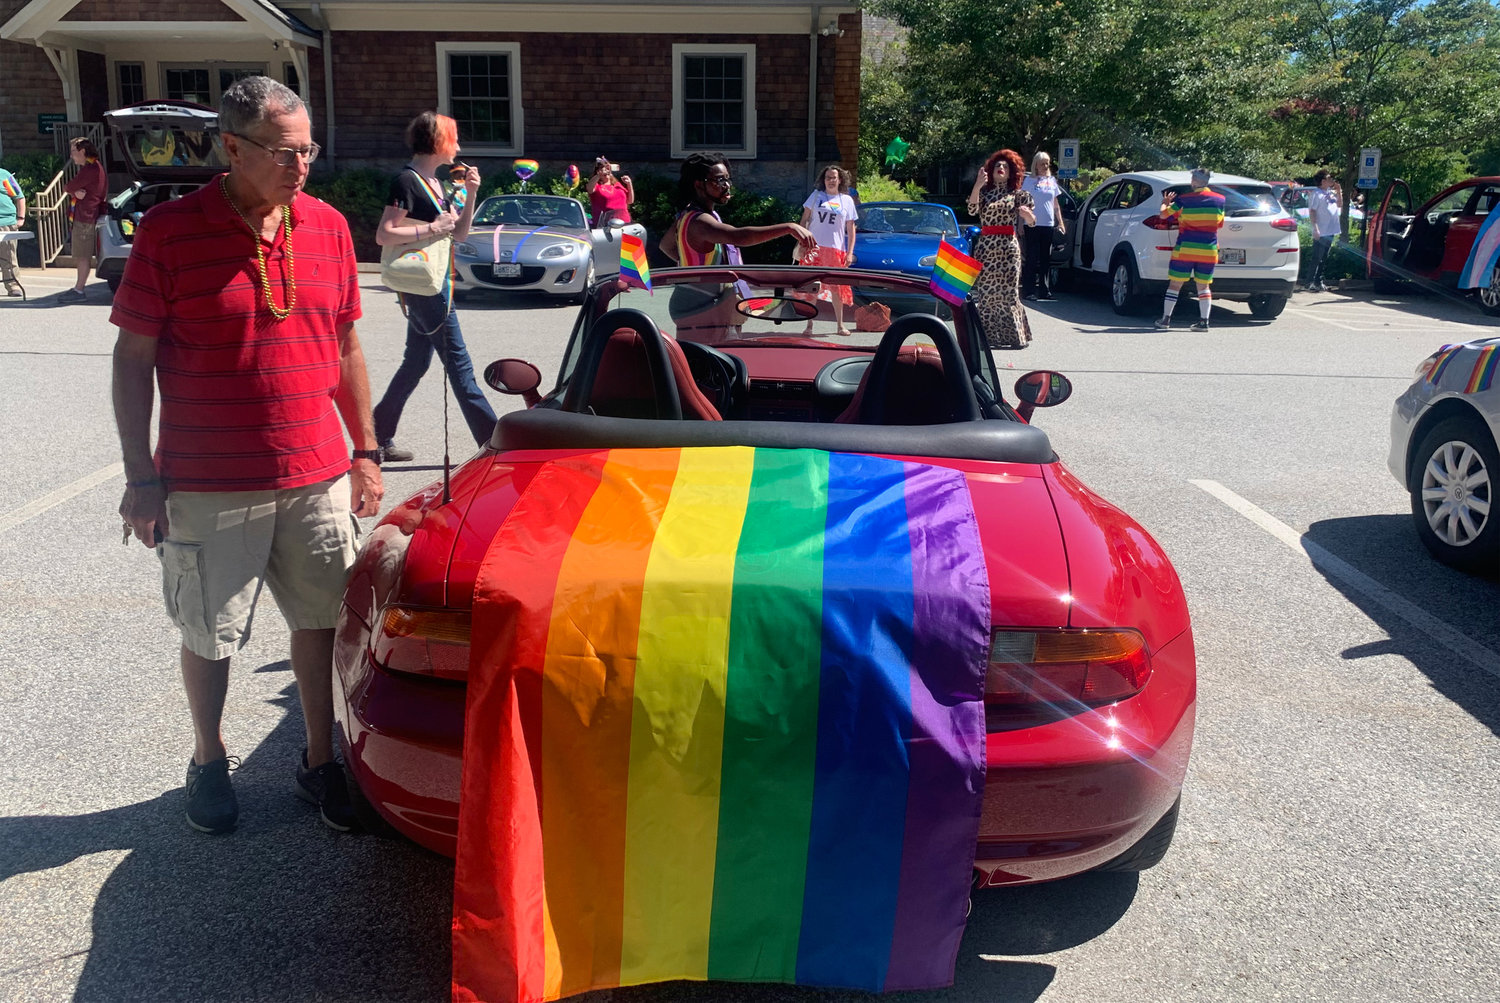 The annual Pride Month celebration originated as a car parade